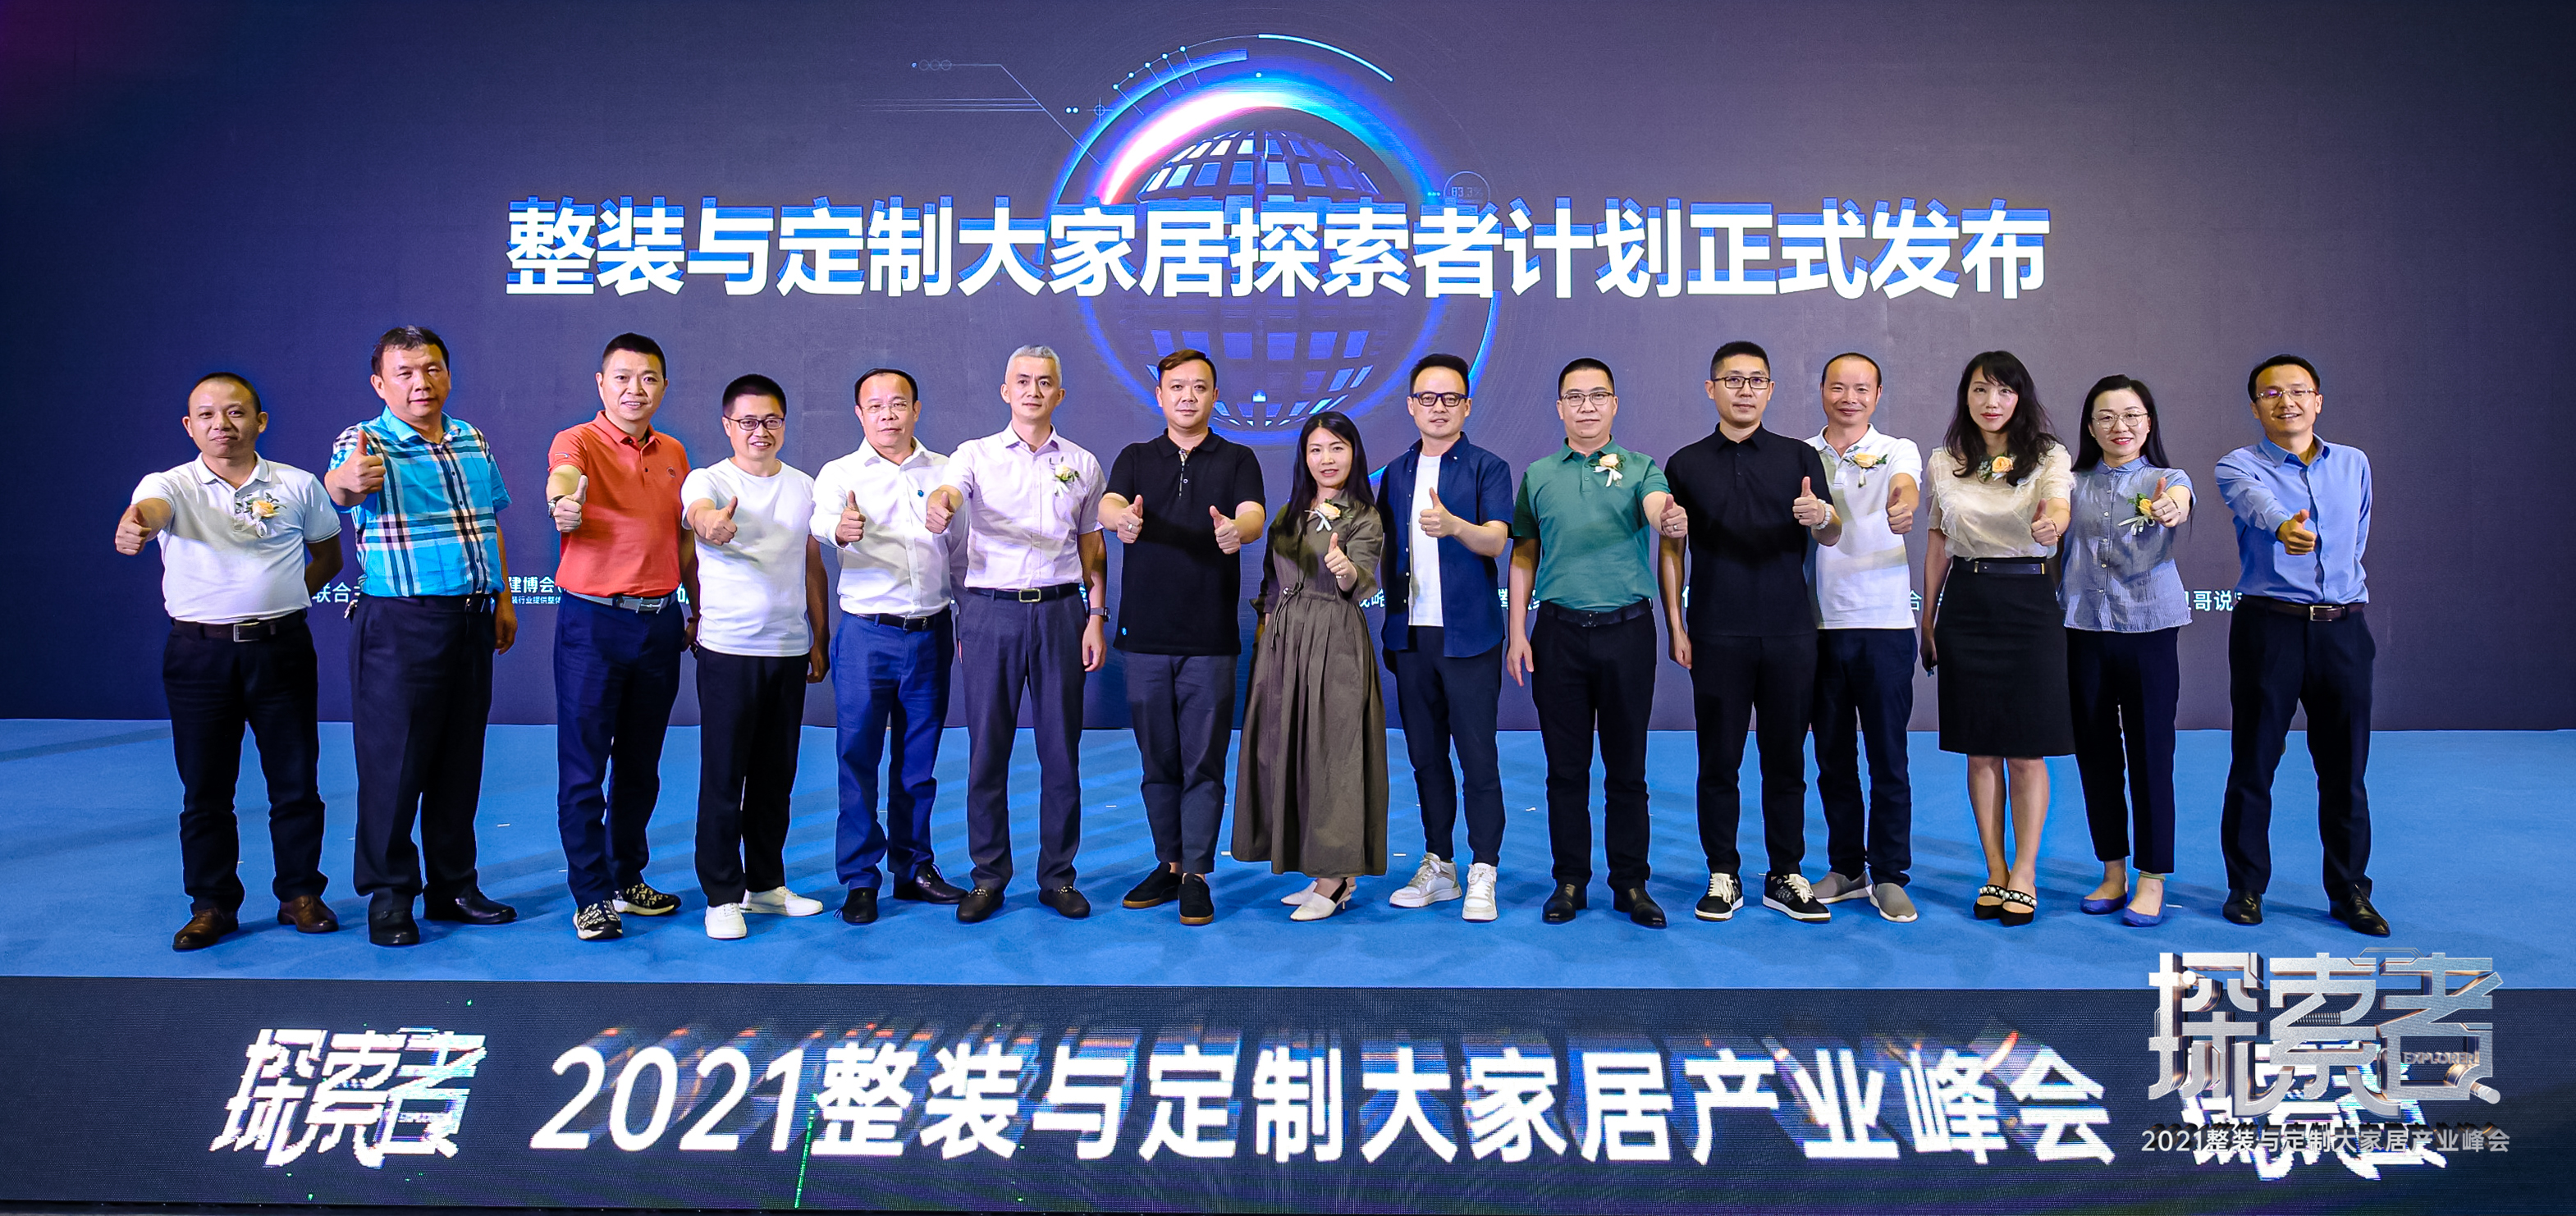 7月21日，以“探索者”为主题的2021整装与定制大家居产业峰会在琶洲·广交会展馆3.1号馆论坛区同期举行。